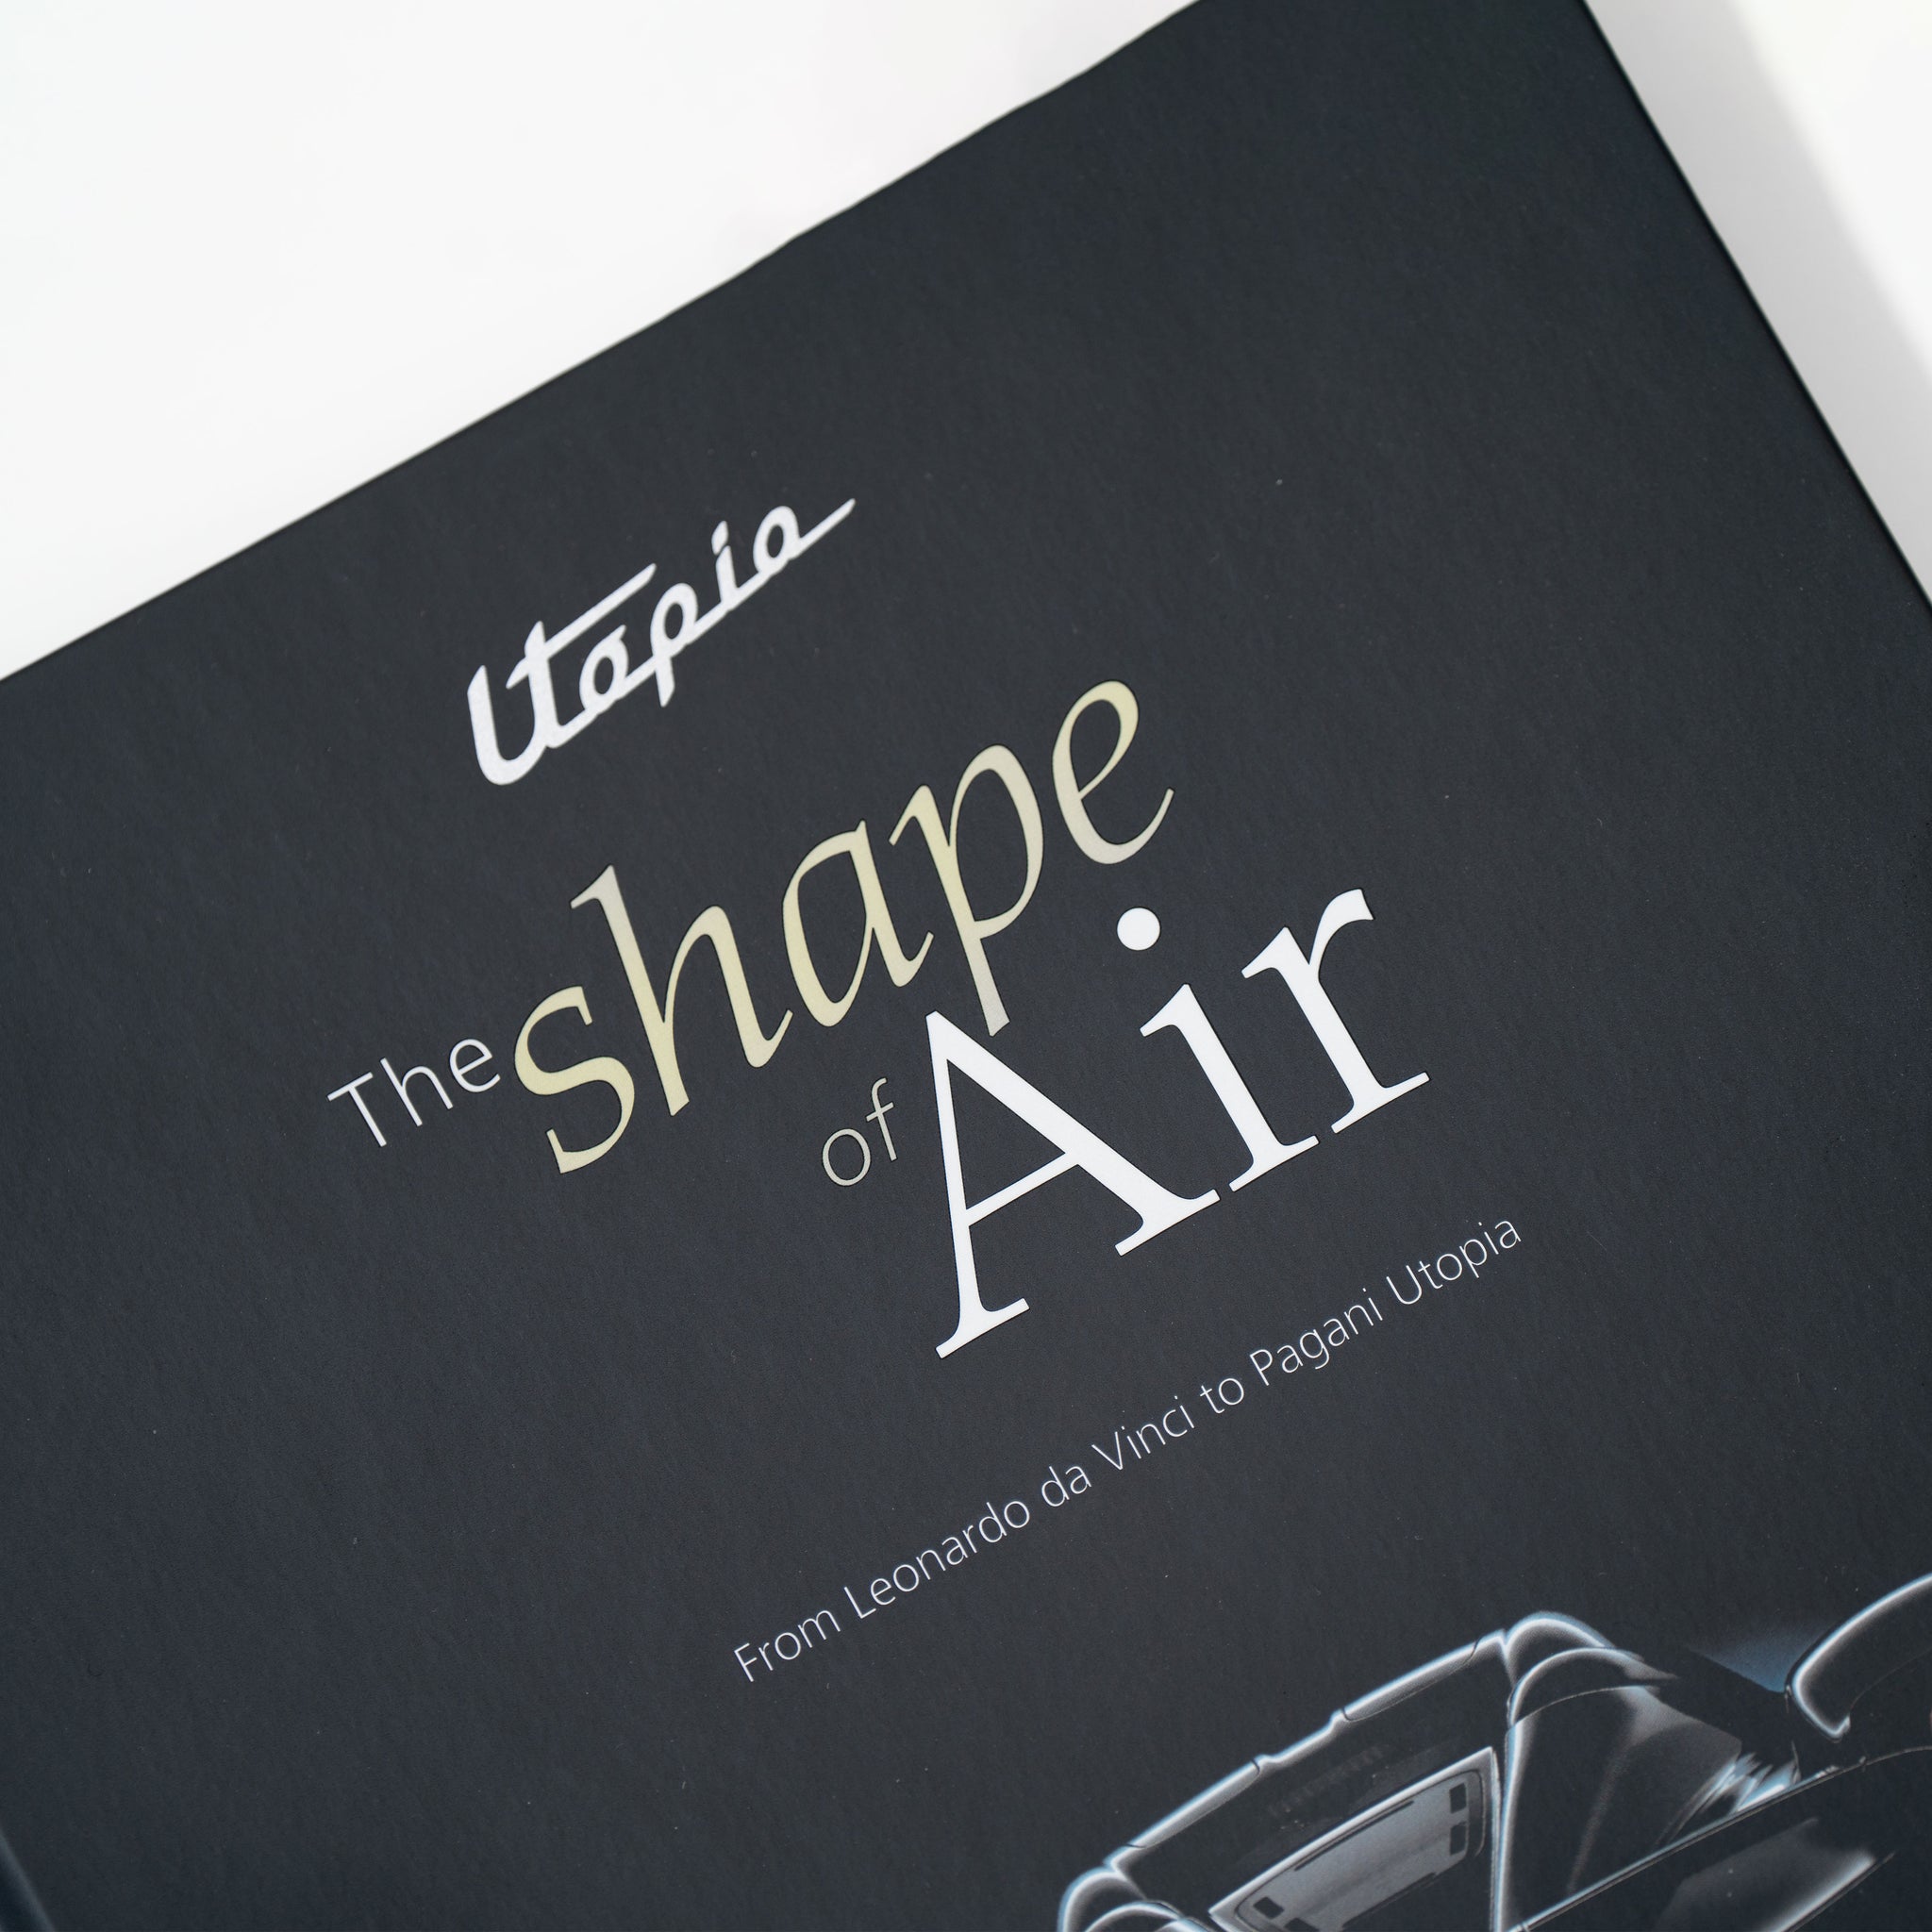 Buch „Utopia. The Shape of Air - From Leonardo da Vinci to Pagani Utopia“ | Verlag Giunti Editore - Englische Fassung